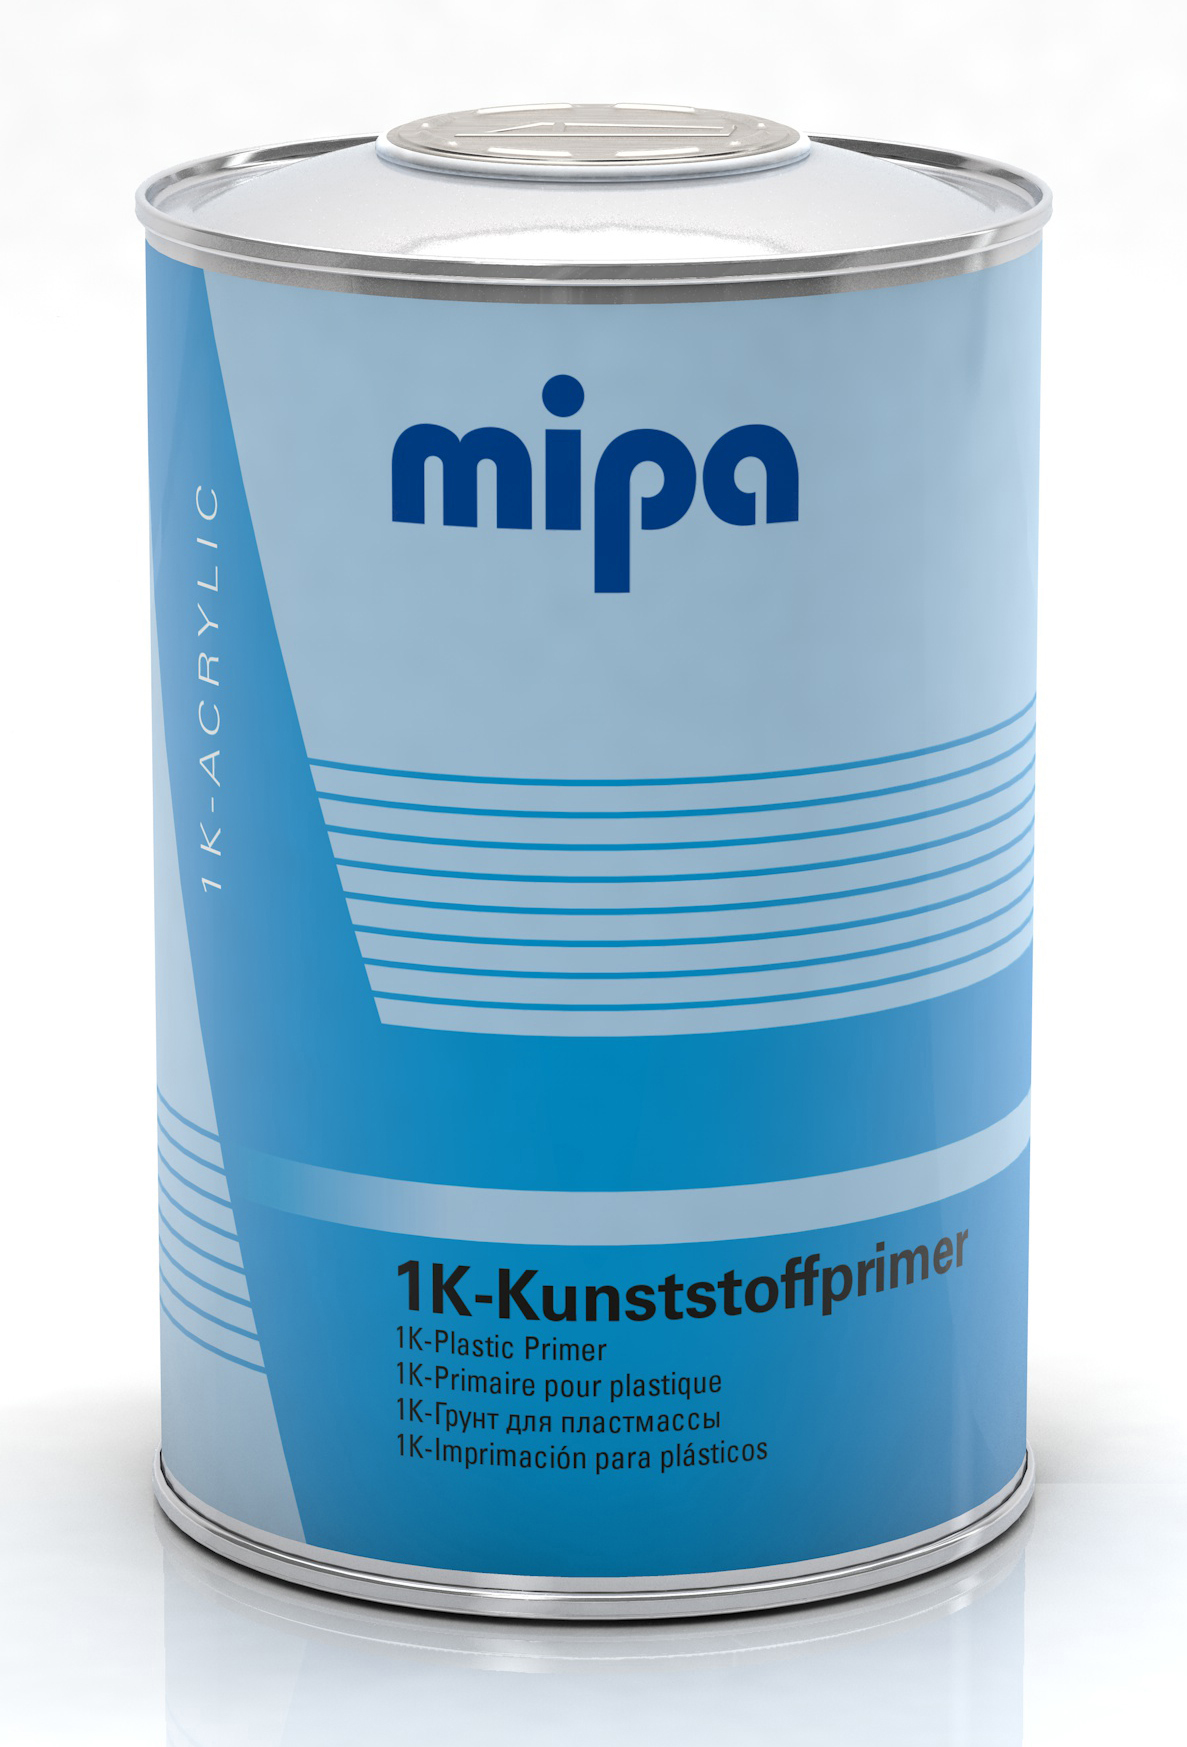 Mipa 1K-Kunststoffprimer 1 l